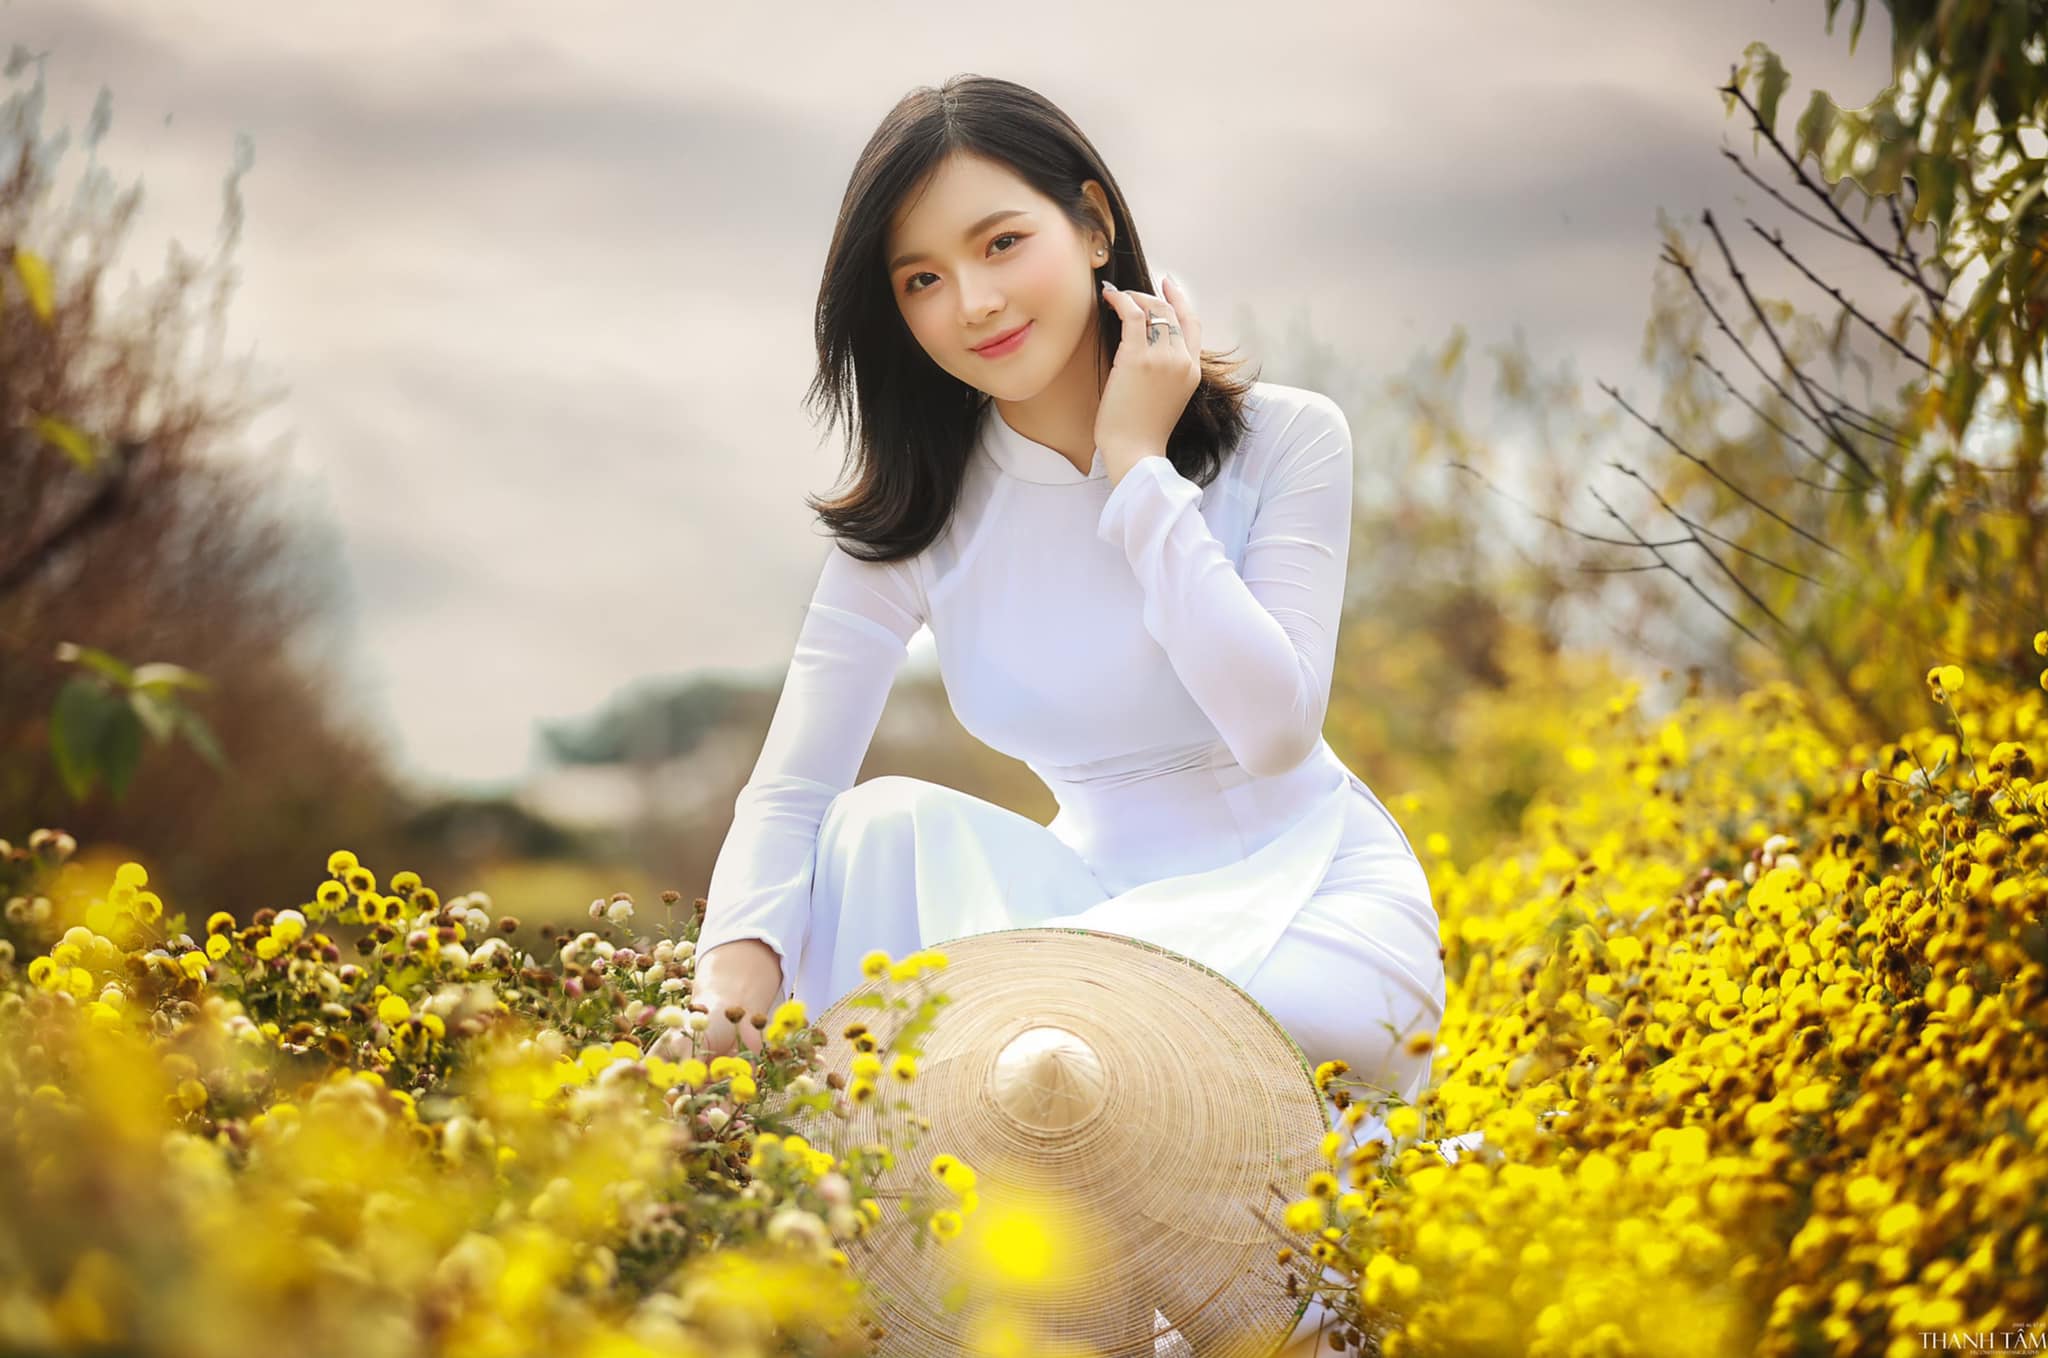 Ngắm hot girl Hà Thành đẹp như tiên giáng trần trong tà áo dài trắng giữa cánh đồng hoa - 1